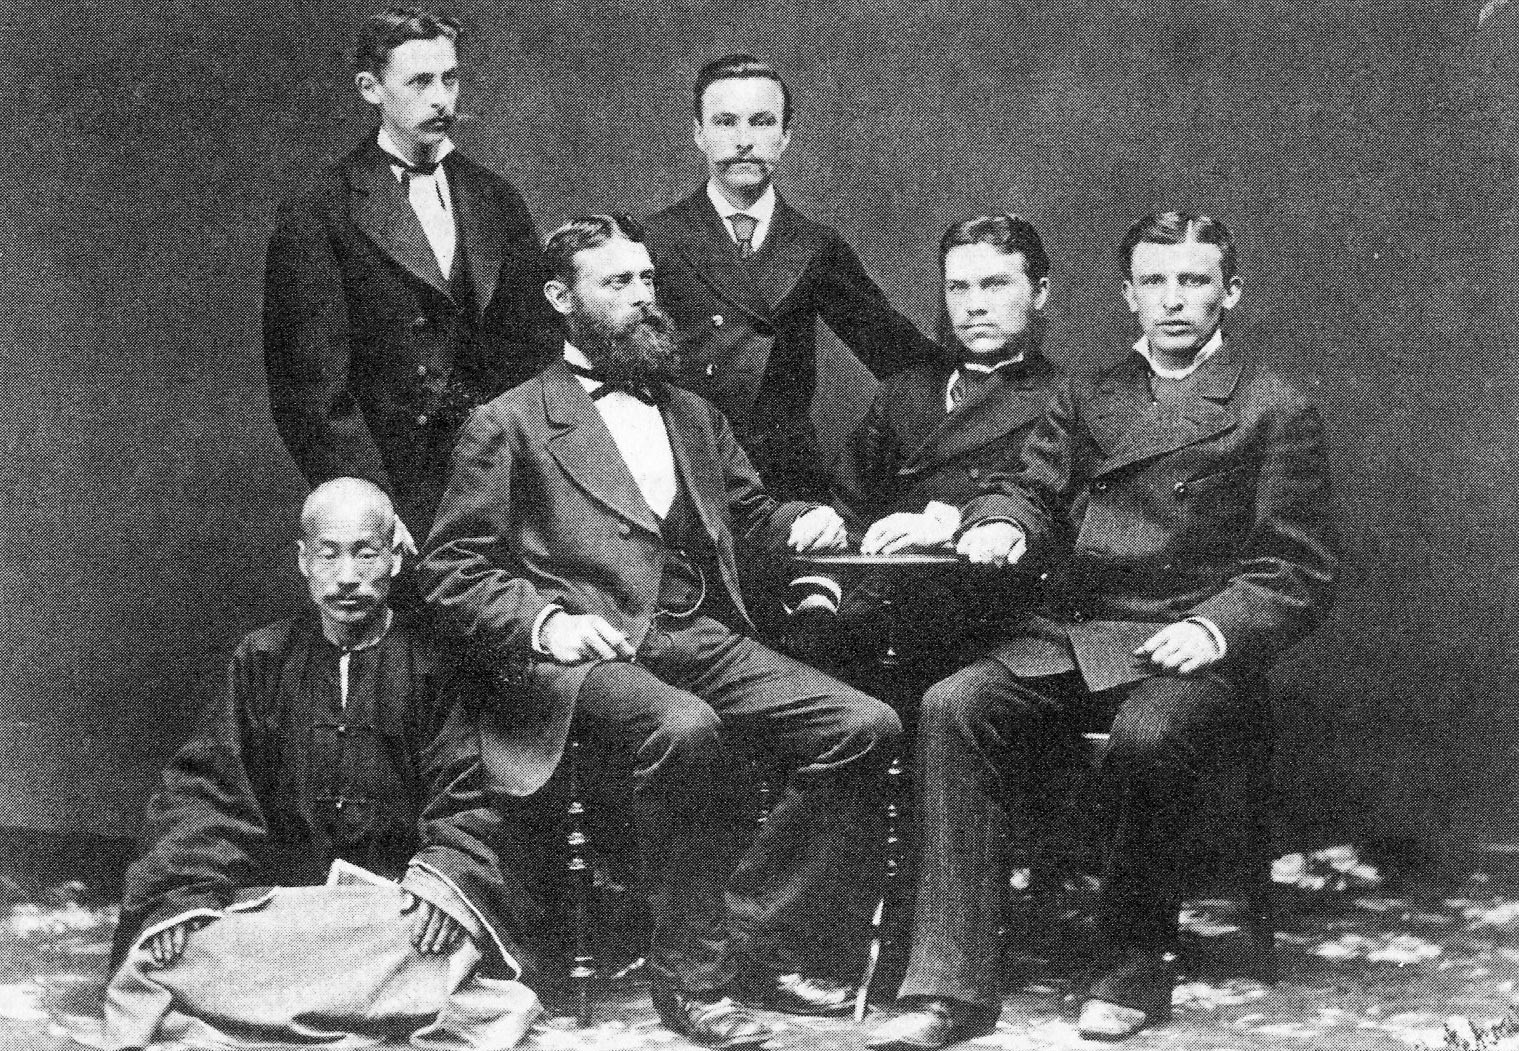  Руководство фирме „Кунст и Алберс“ на последњем сусрету у Владивостоку 1880. За столом су (слева надесно): Густав Алберс, Густав Кунст и Адолф Датан, иза њих су сарадници Данац Антон Нилсен (лево) и М.М.Дмитријев (десно). Доле је Чи Мо Чен, који је био шеф кинеским радницима.